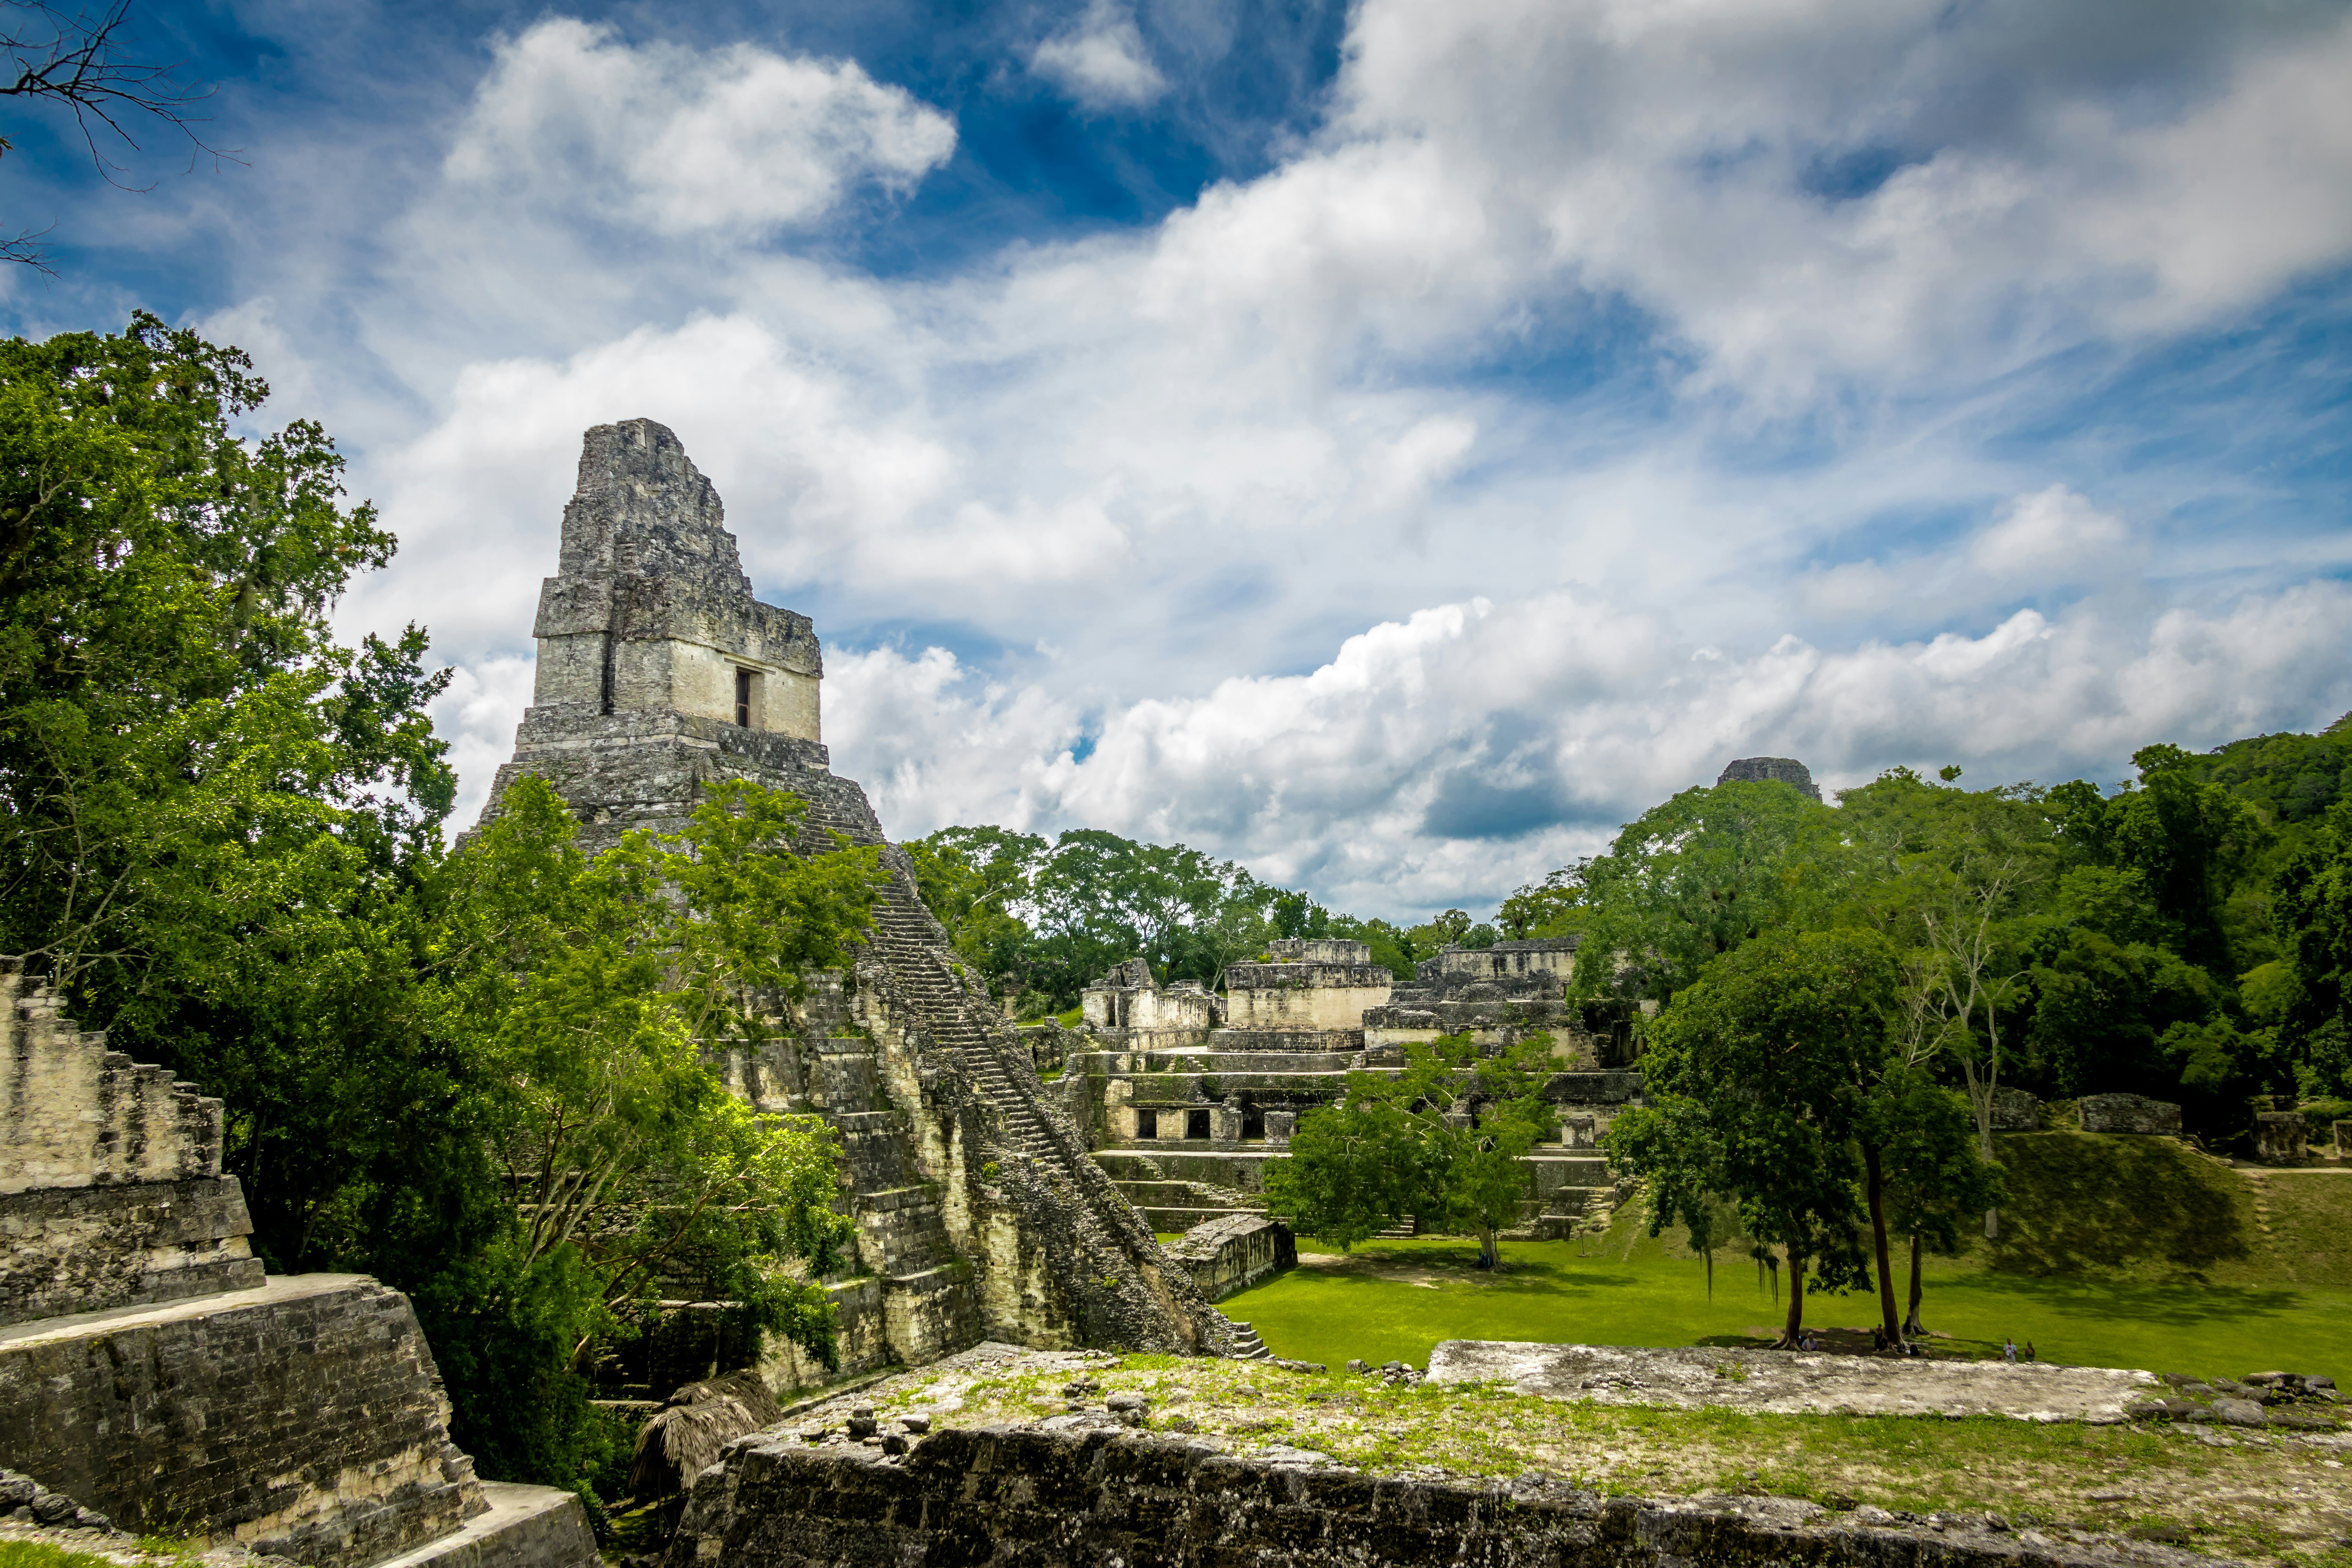 Mayan Temple I (Gran Jaguar) at the Tikal National Park